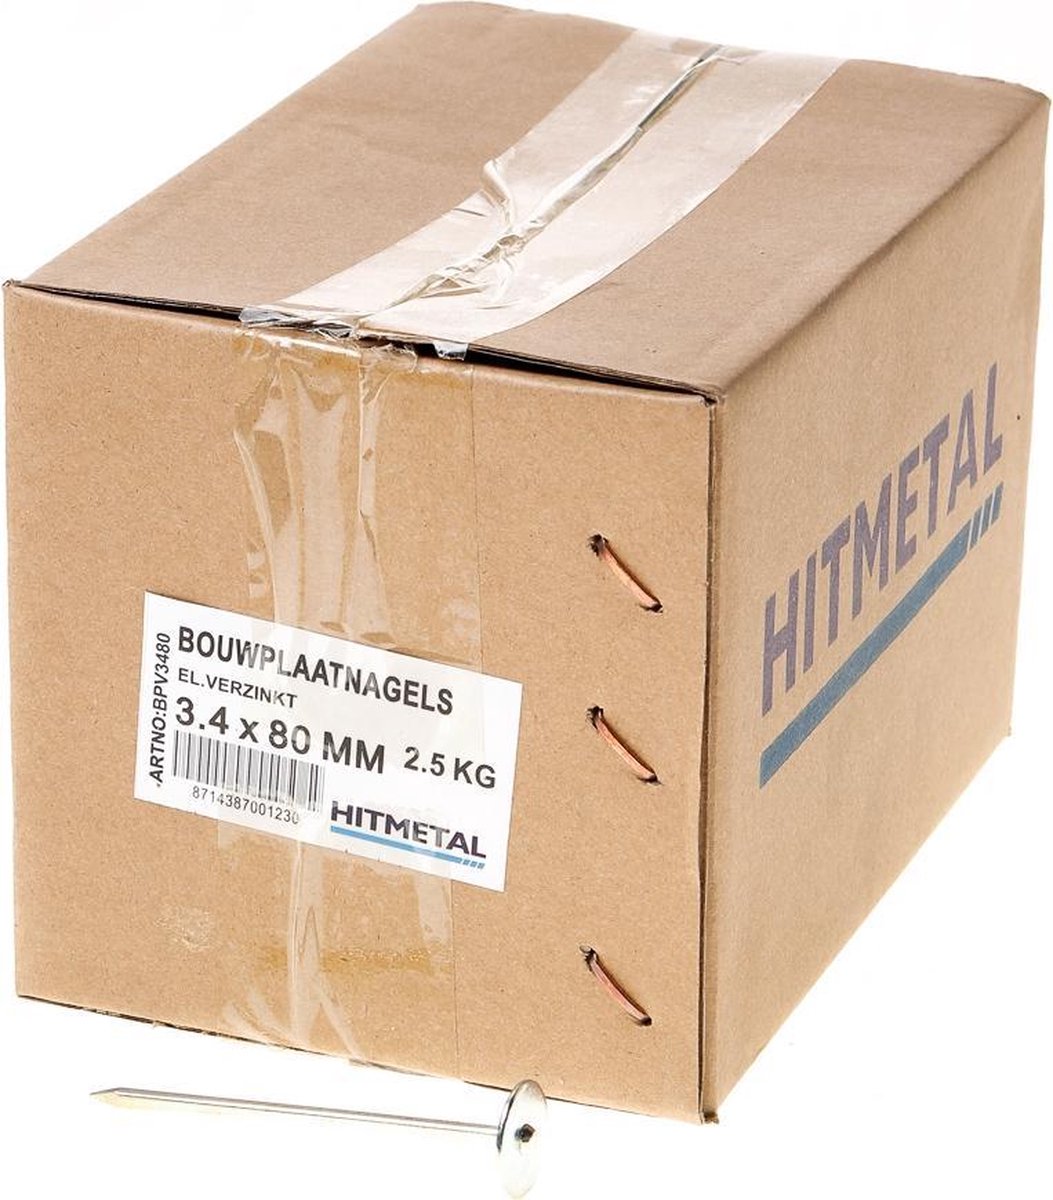 Hitmetal Bouwplaatnagel gegalvaniseerd 3.4 x 80mm